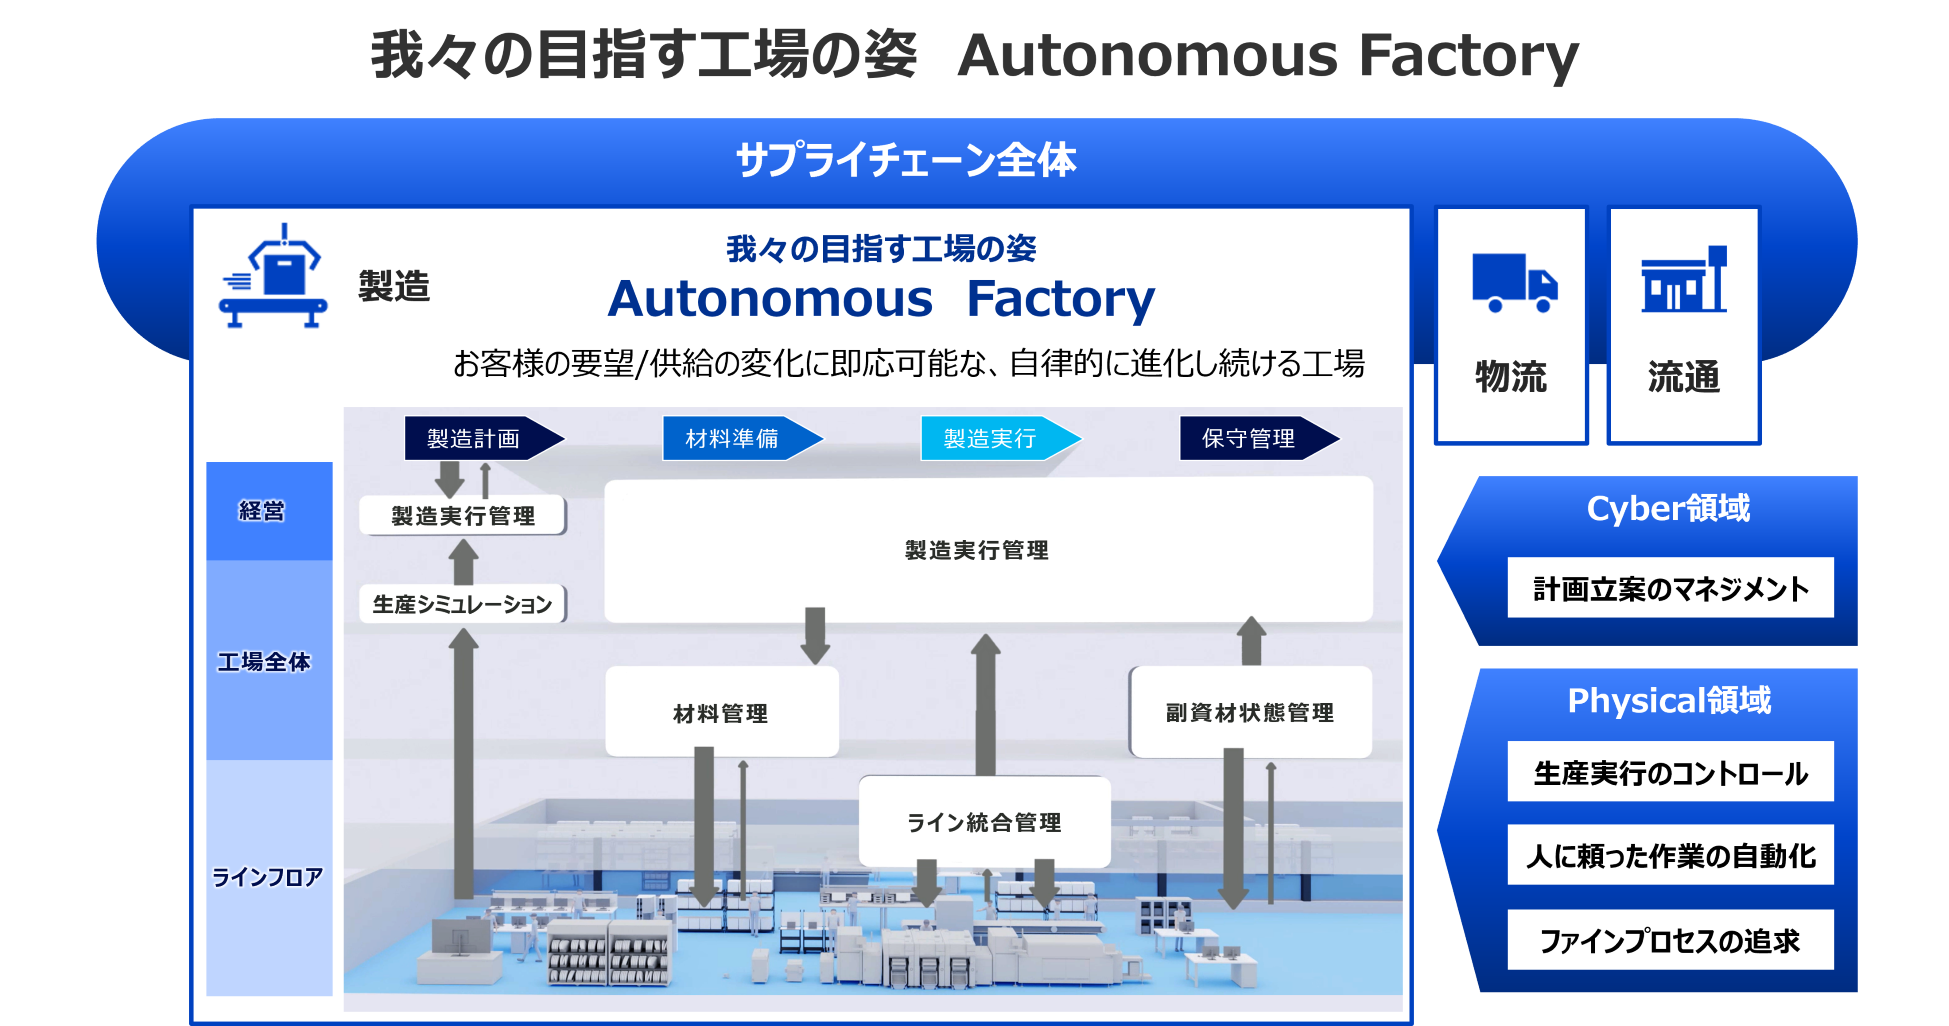 我々の目指す工場の姿　Autonomous Factory